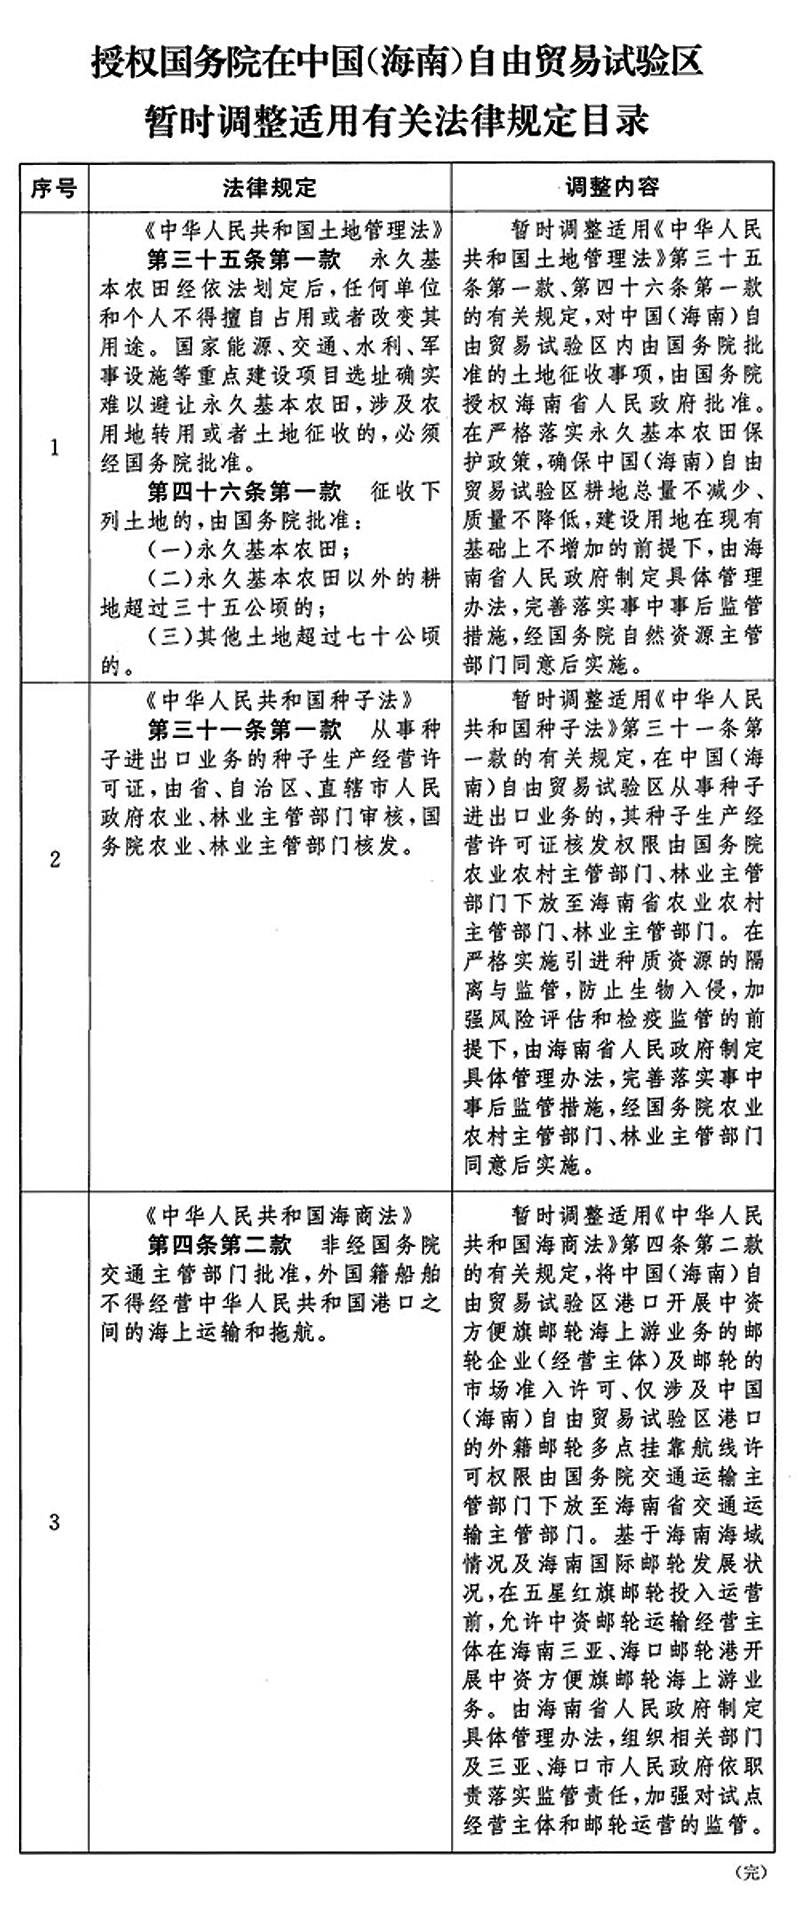 關於授權國務院在中國（海南）自由貿易試驗區暫時調整實施有關法律規定的決定（草案）